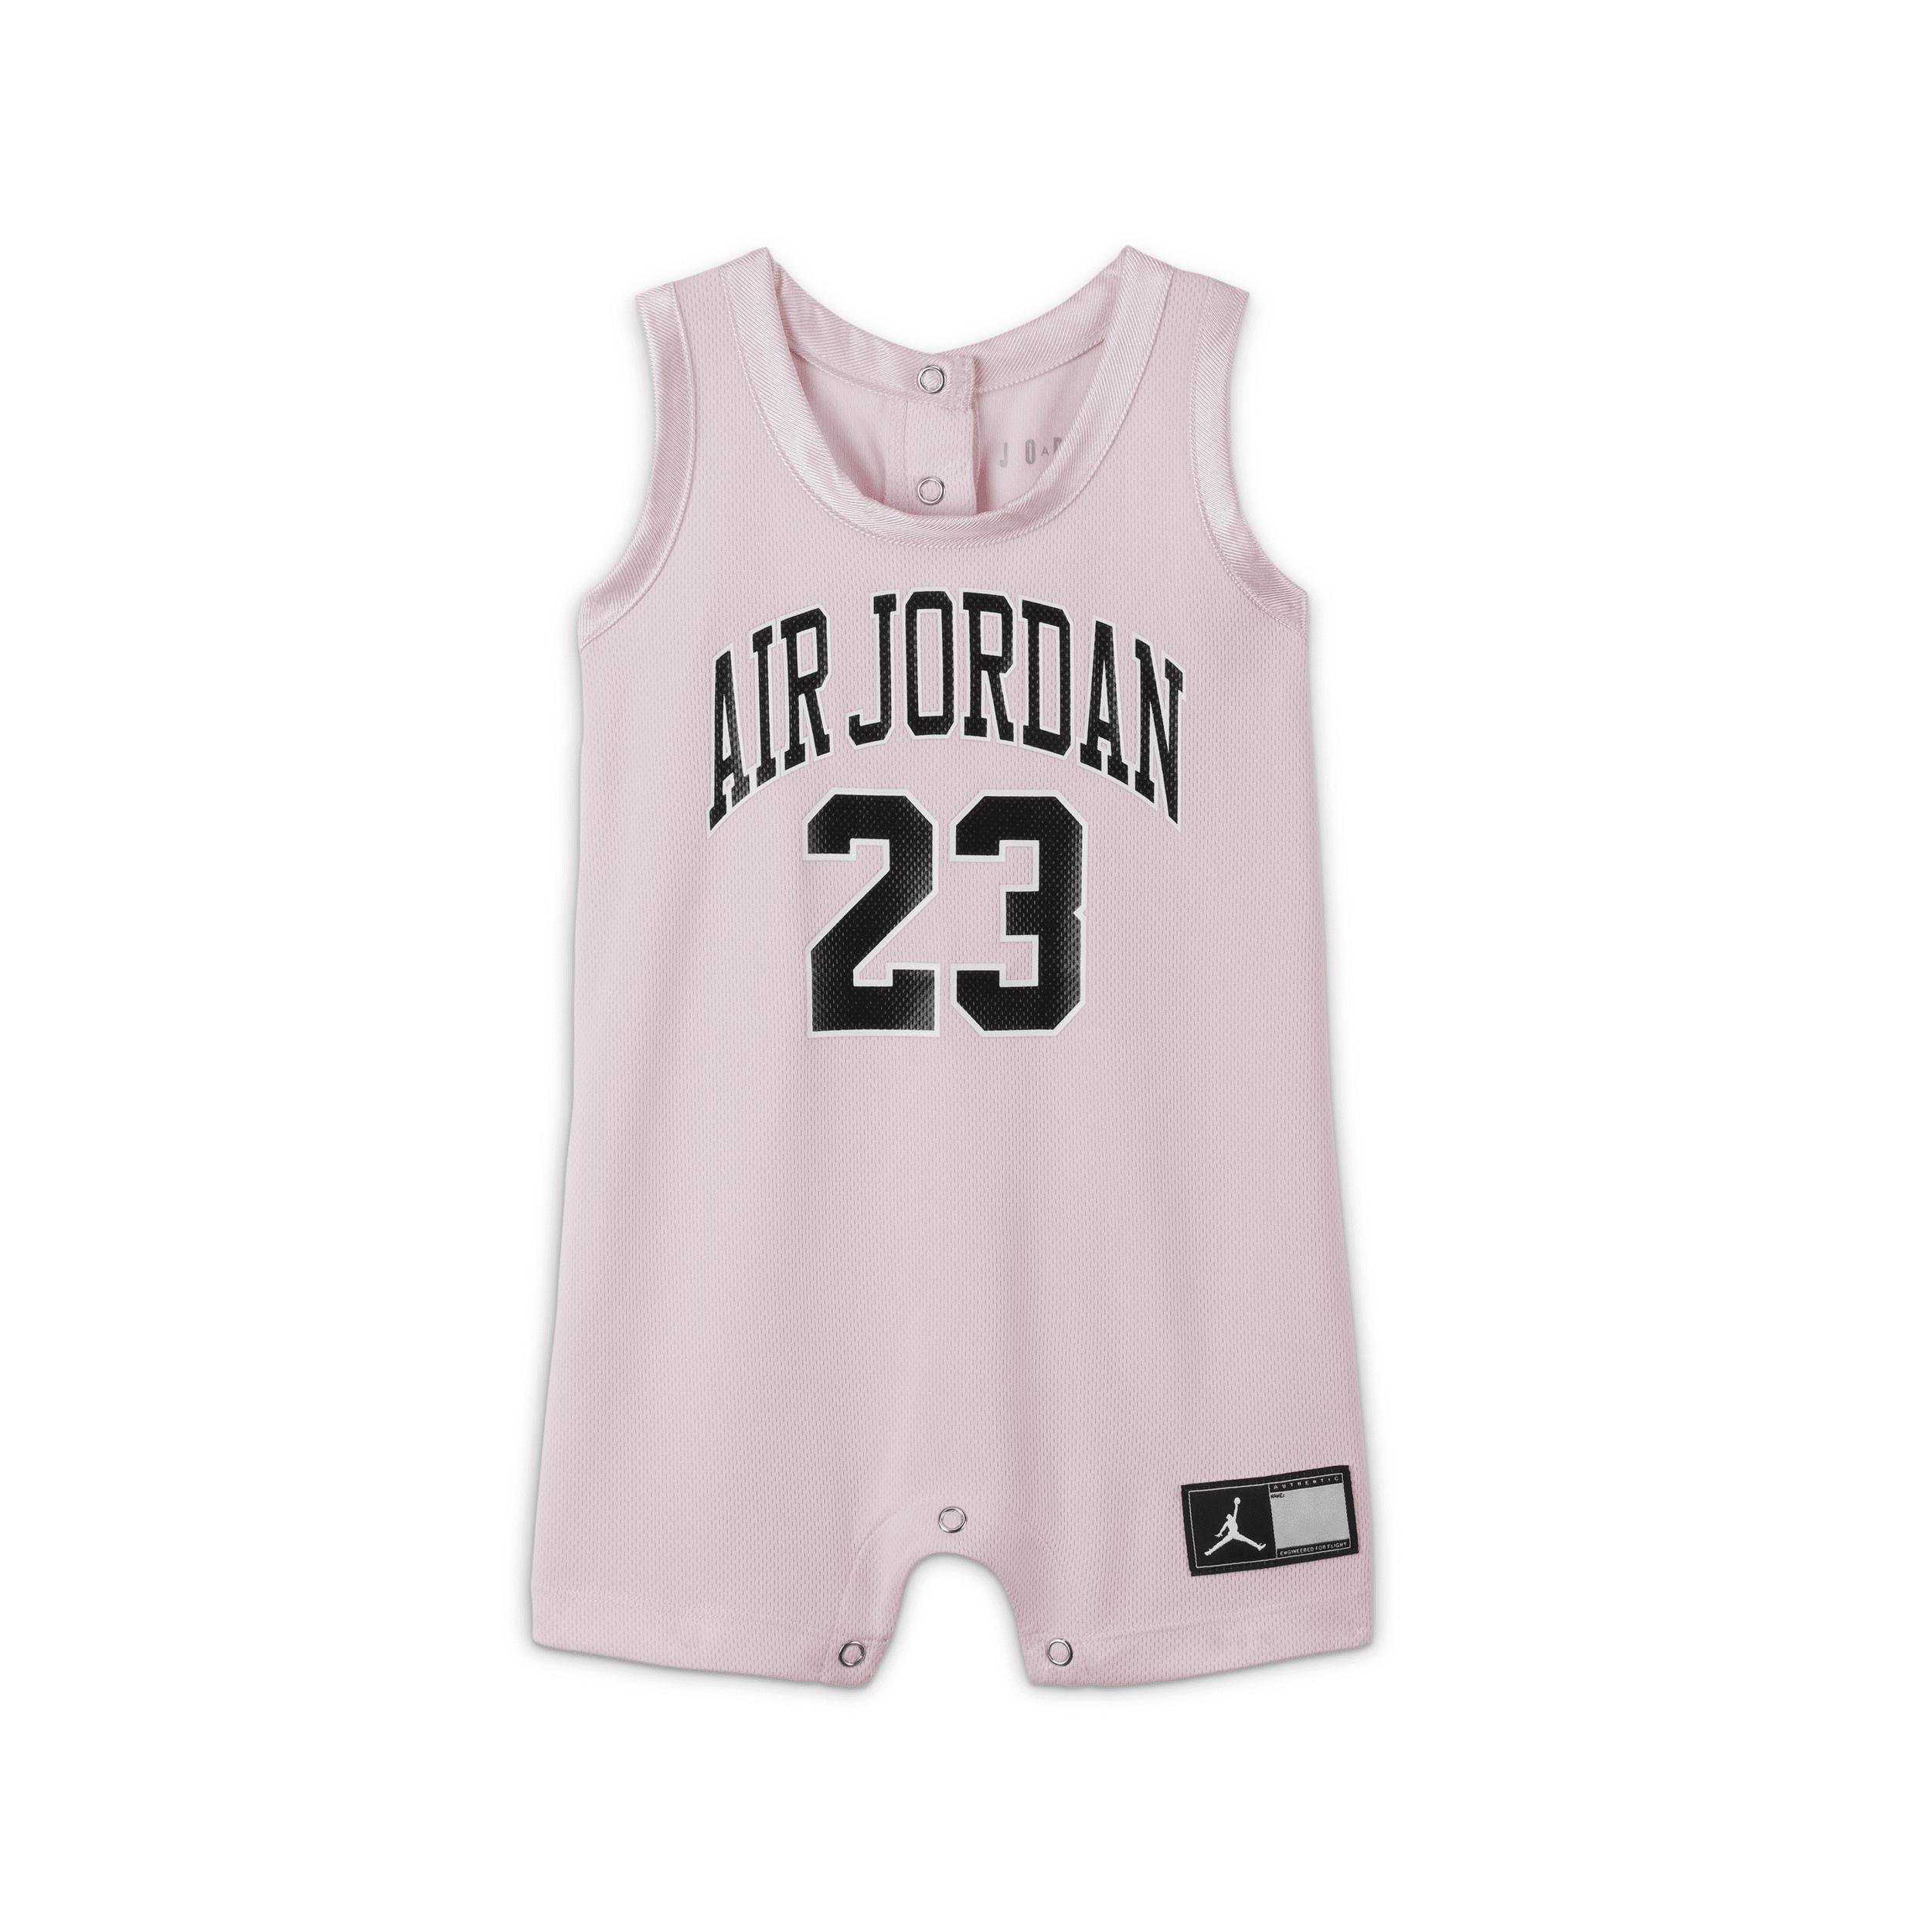 Jordan Baby (12-24M) Jersey Romper by JORDAN